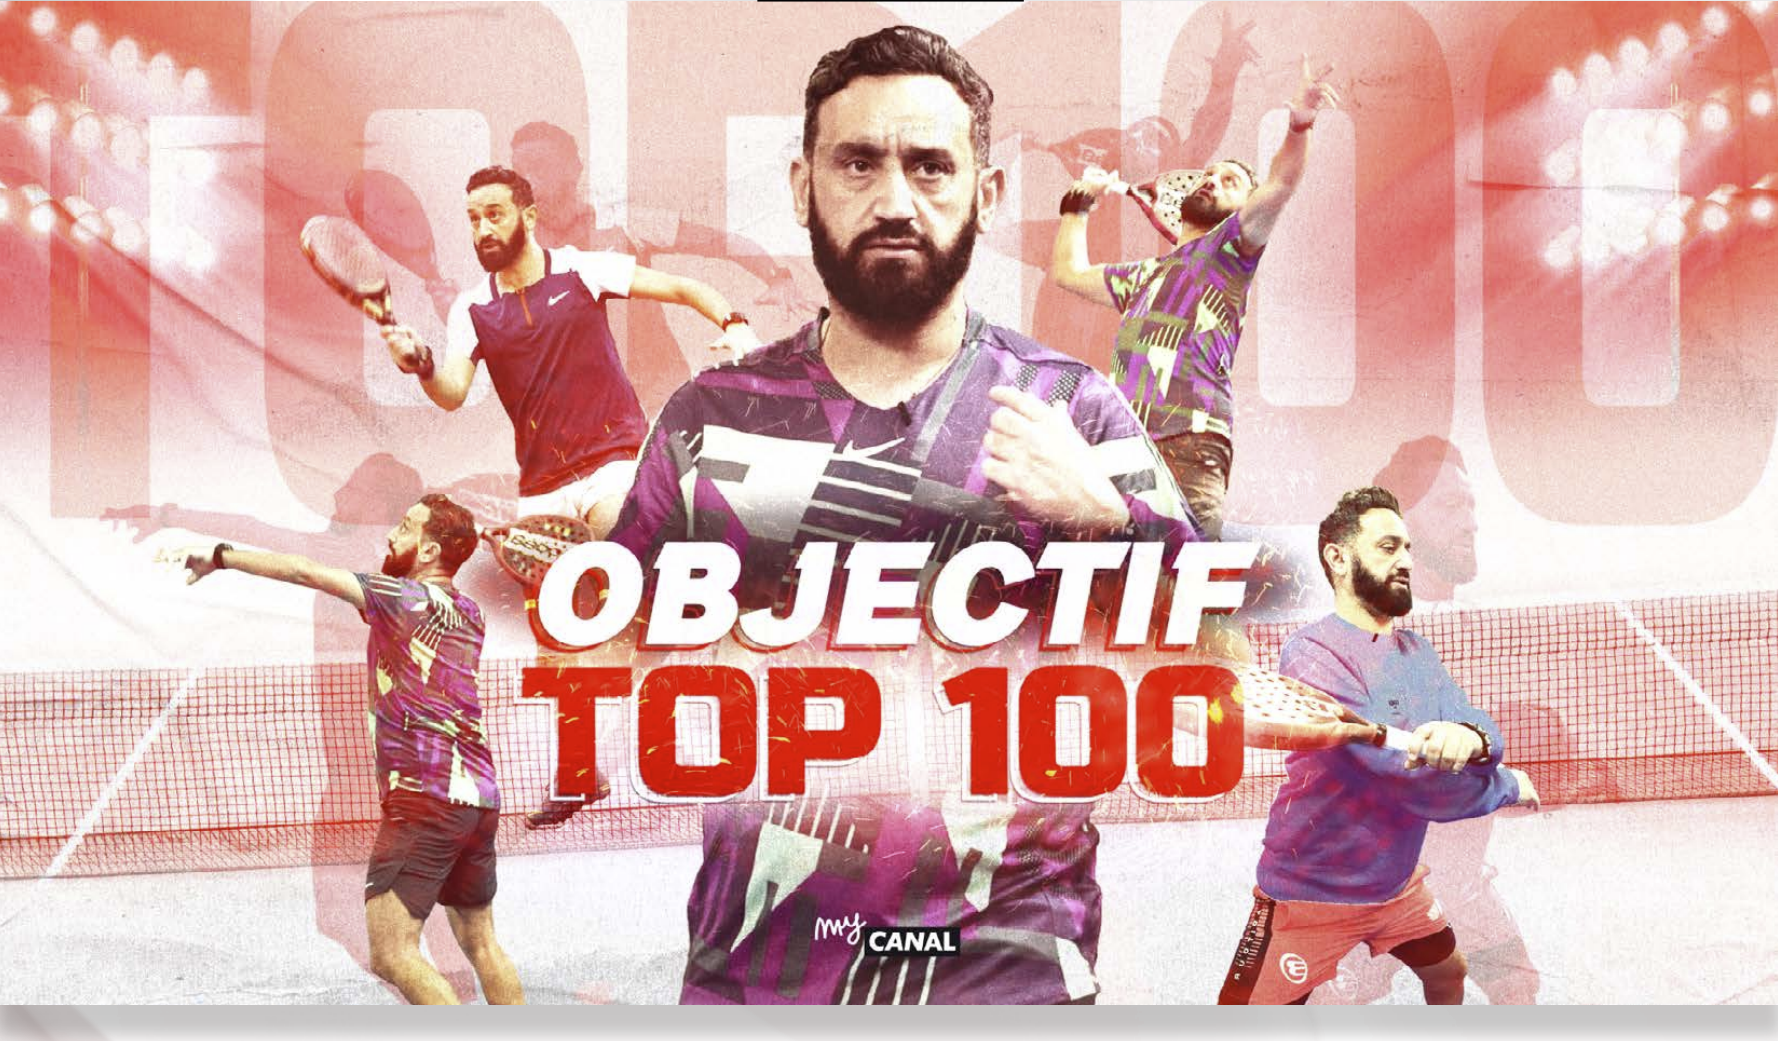 Top 100 obiektywnego sezonu 2 Cyrila Hanouny już w ten czwartek, 23 lutego!